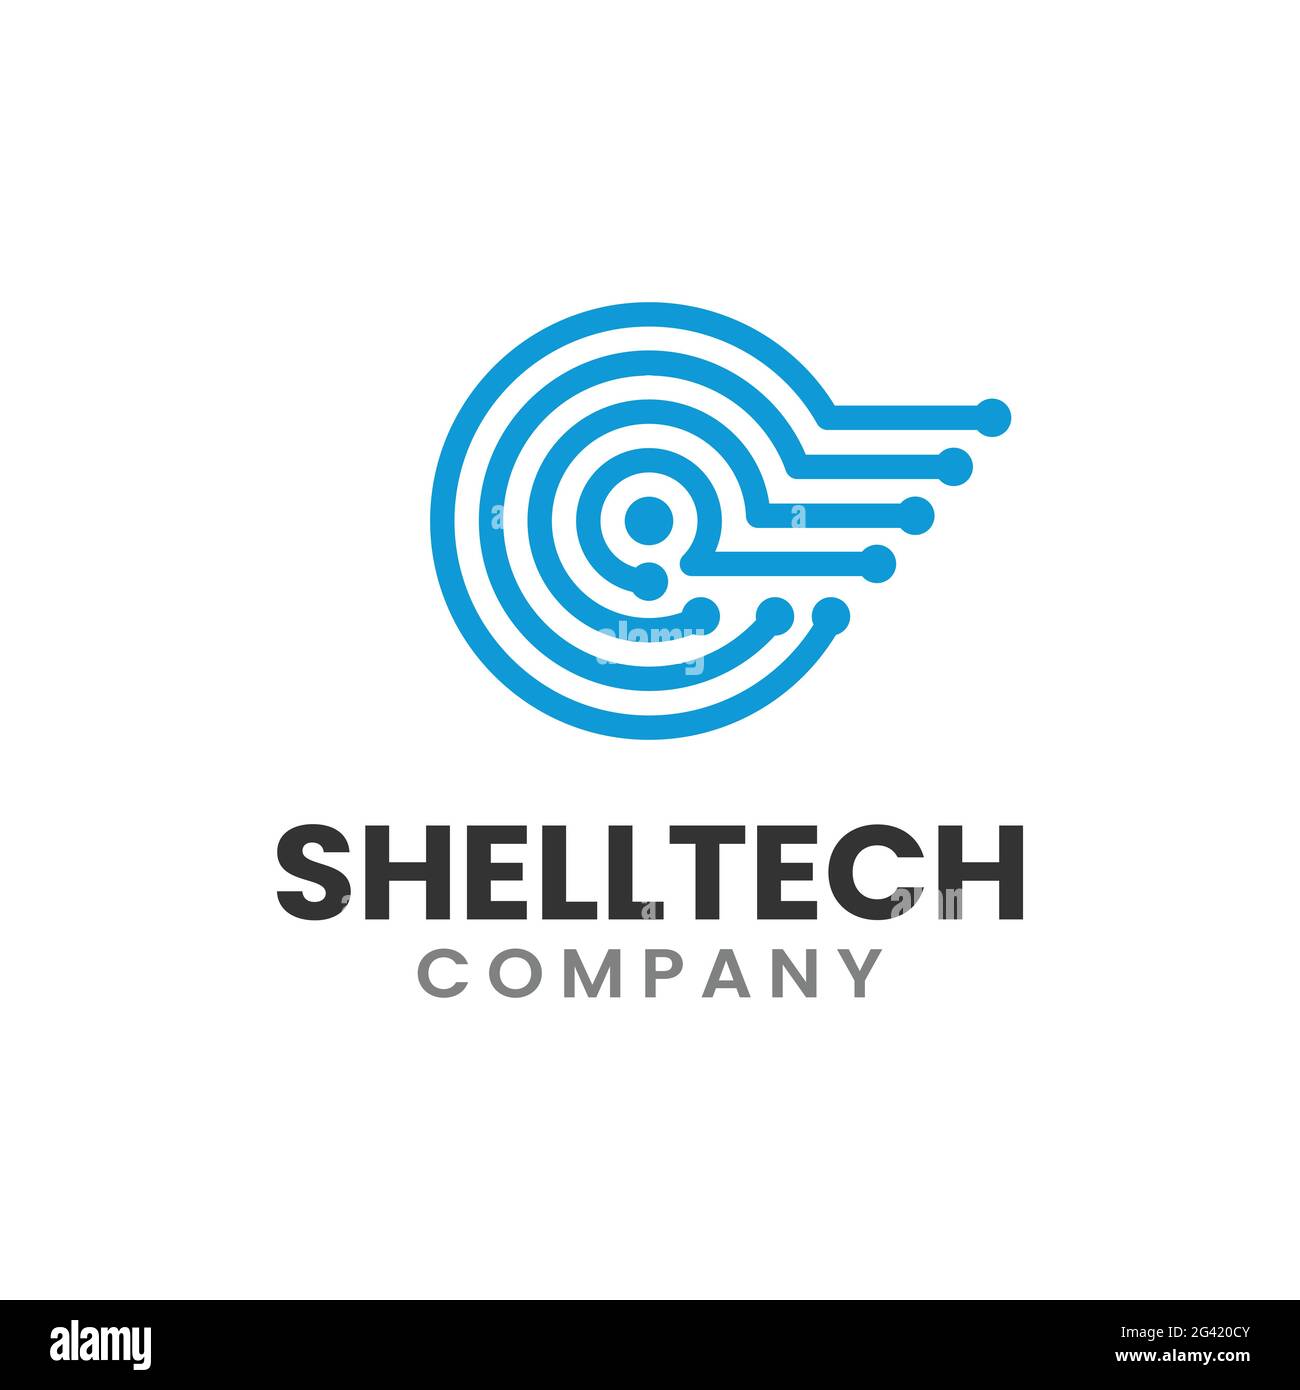 Design-Vorlage Für Nautilus Shell Circuit Technology Logo. Geeignet für IT Technologie Internet Digitale Medien Unternehmen Business Corporate Brand Modern Stock Vektor